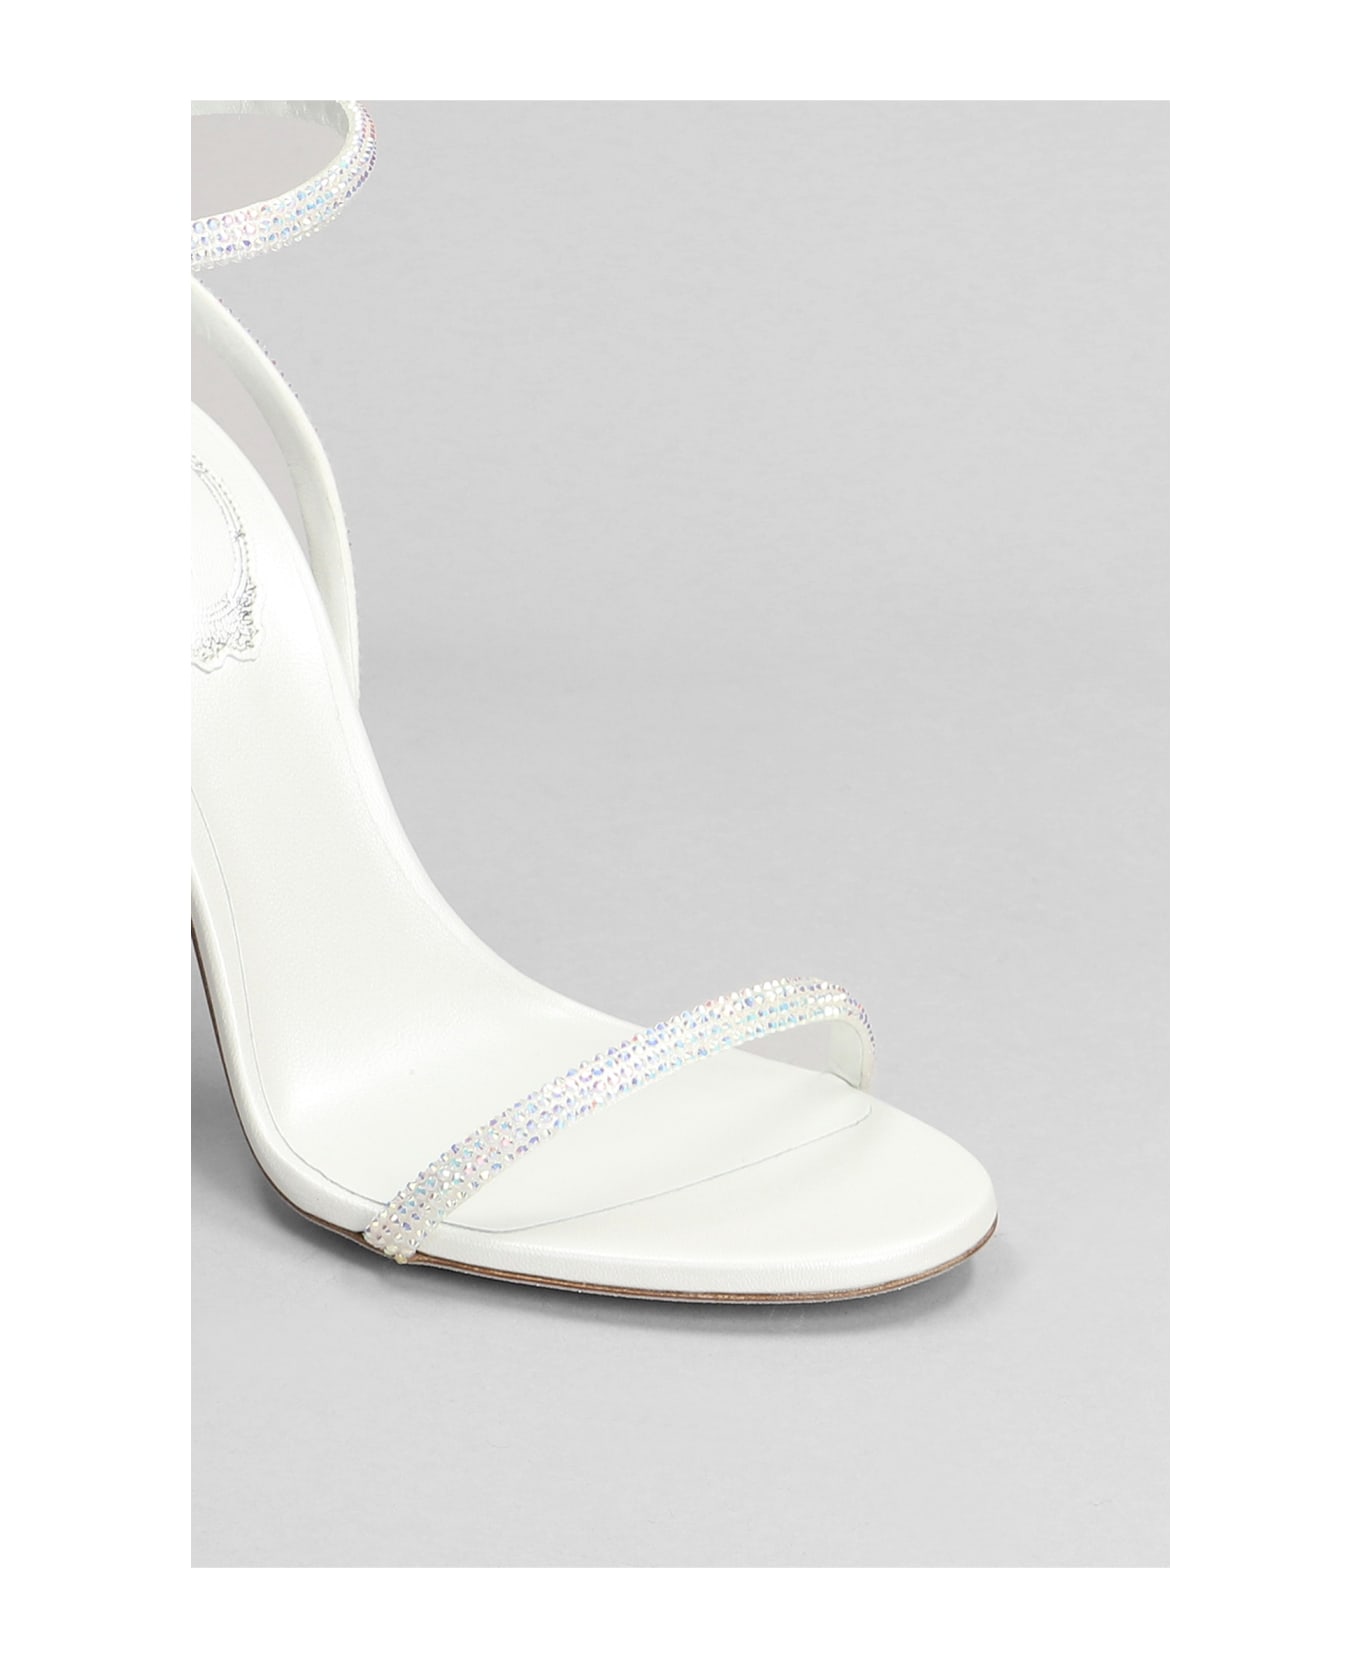 René Caovilla Ellabrita Sandals In White Leather - white